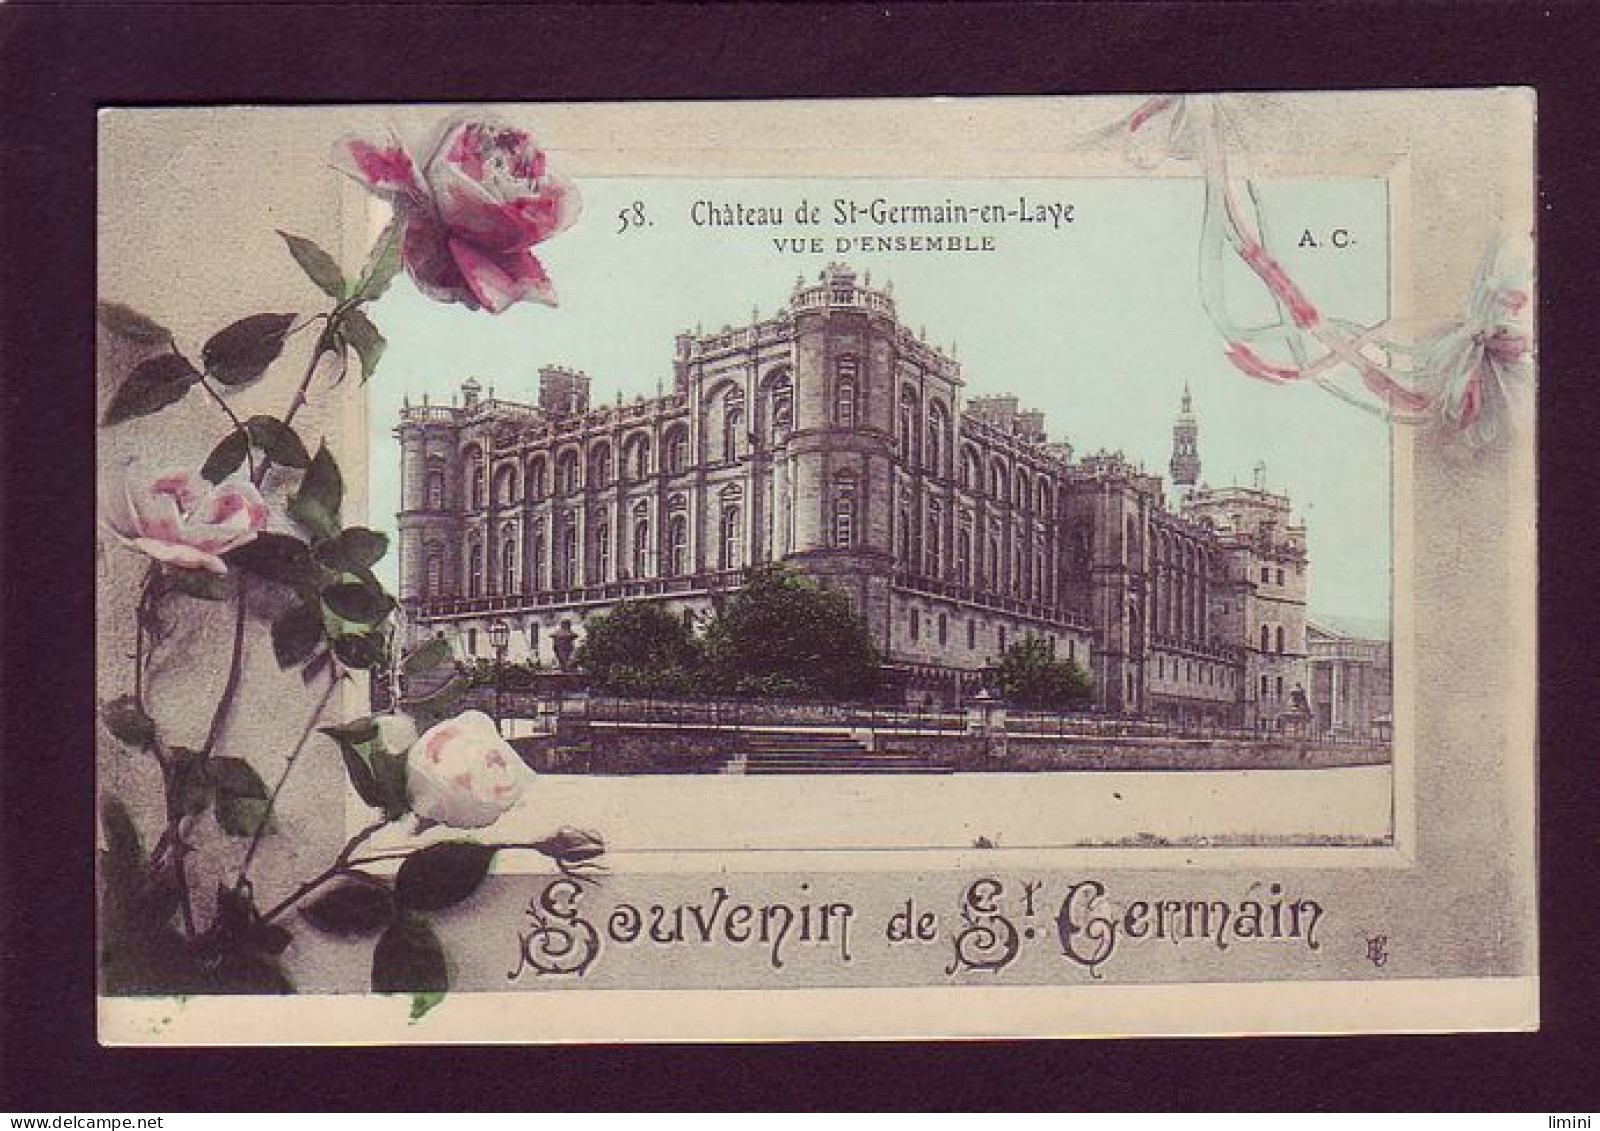 78 - SAINT-GERMAIN-en-LAYE - FLEURS - CARTE ILLUSTRÉE - SOUVENIR -  - St. Germain En Laye (castle)